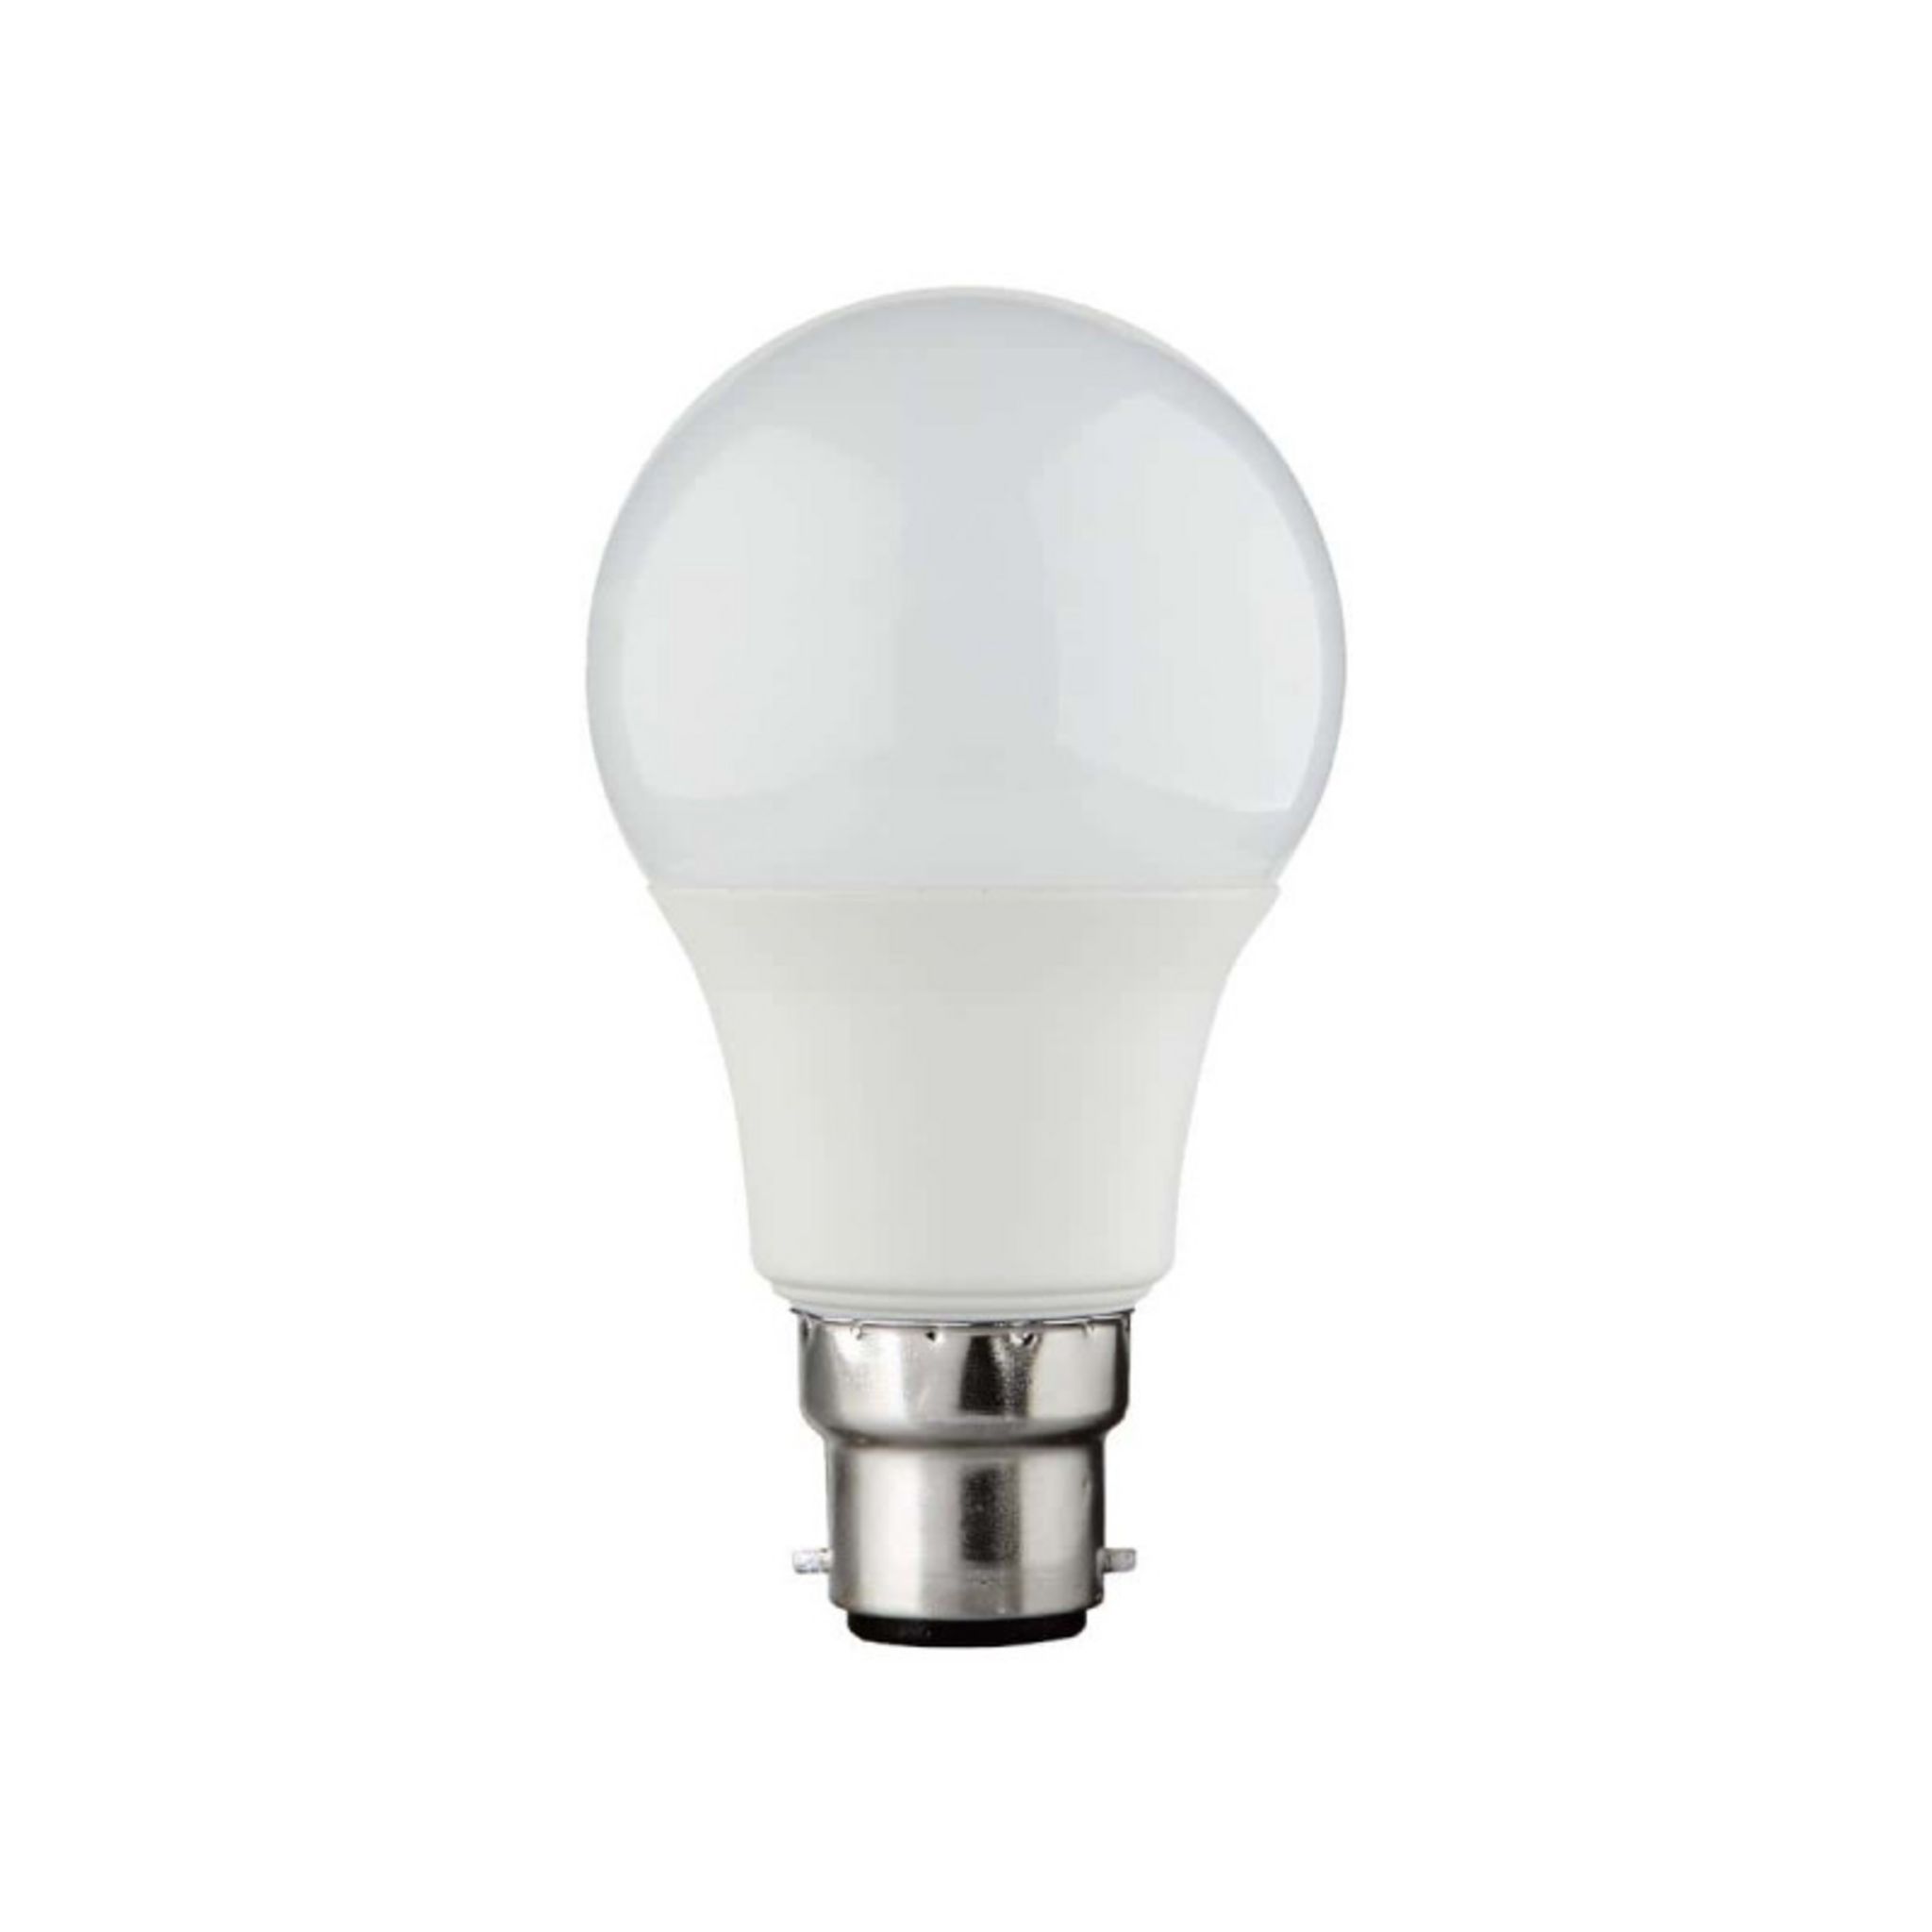 Ampoule LED XXCELL standard - B22 Baionnette équivalent 100W pas cher 